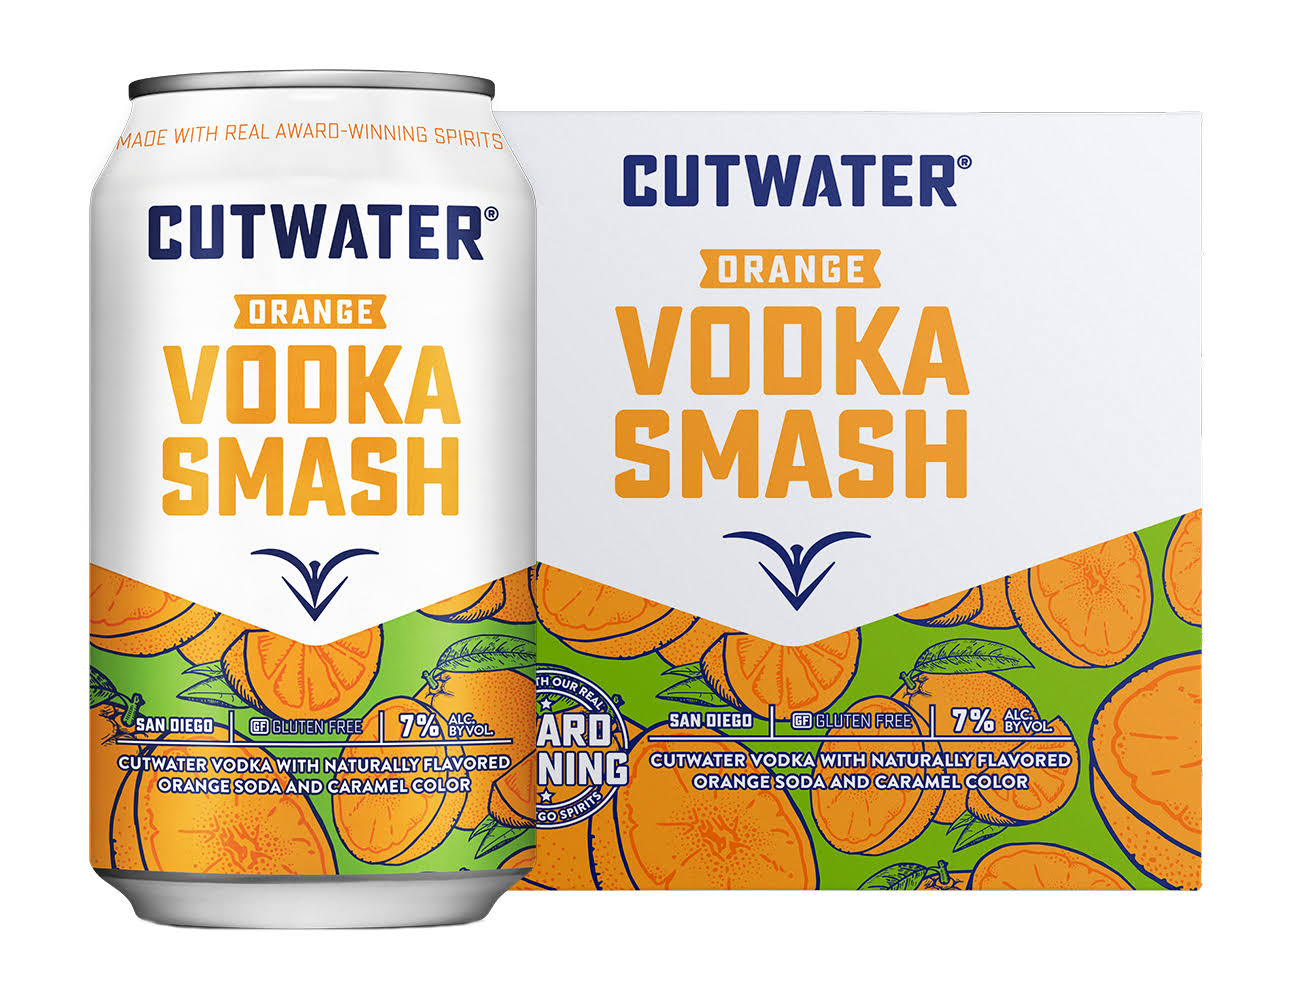 Cutwater Orange Vodka Smash